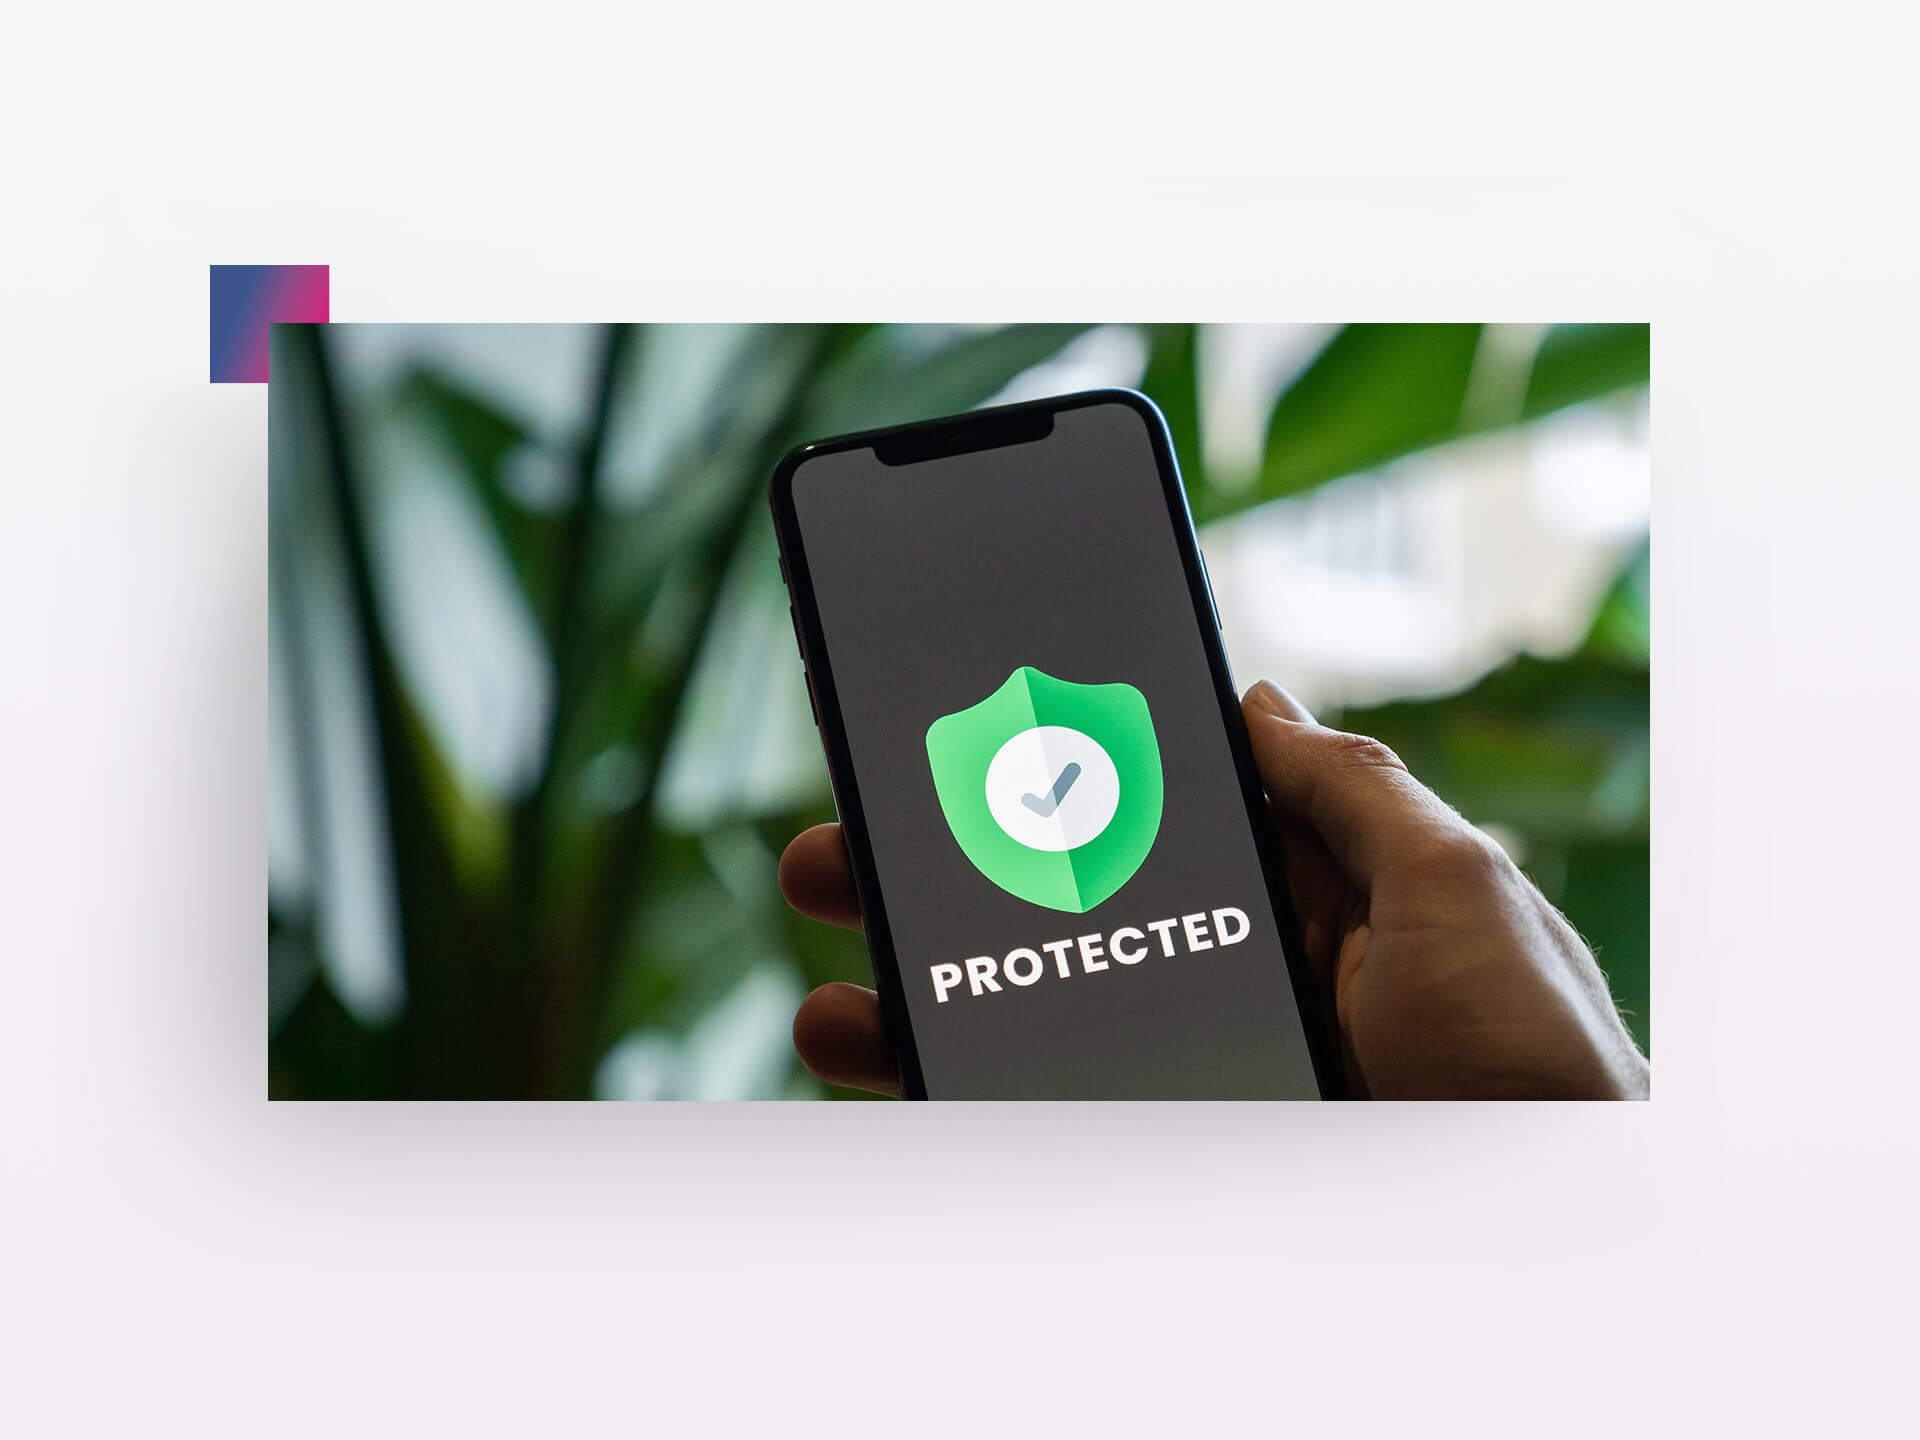 Smartphone mit Schriftzug "Protected" und grünem Wappen